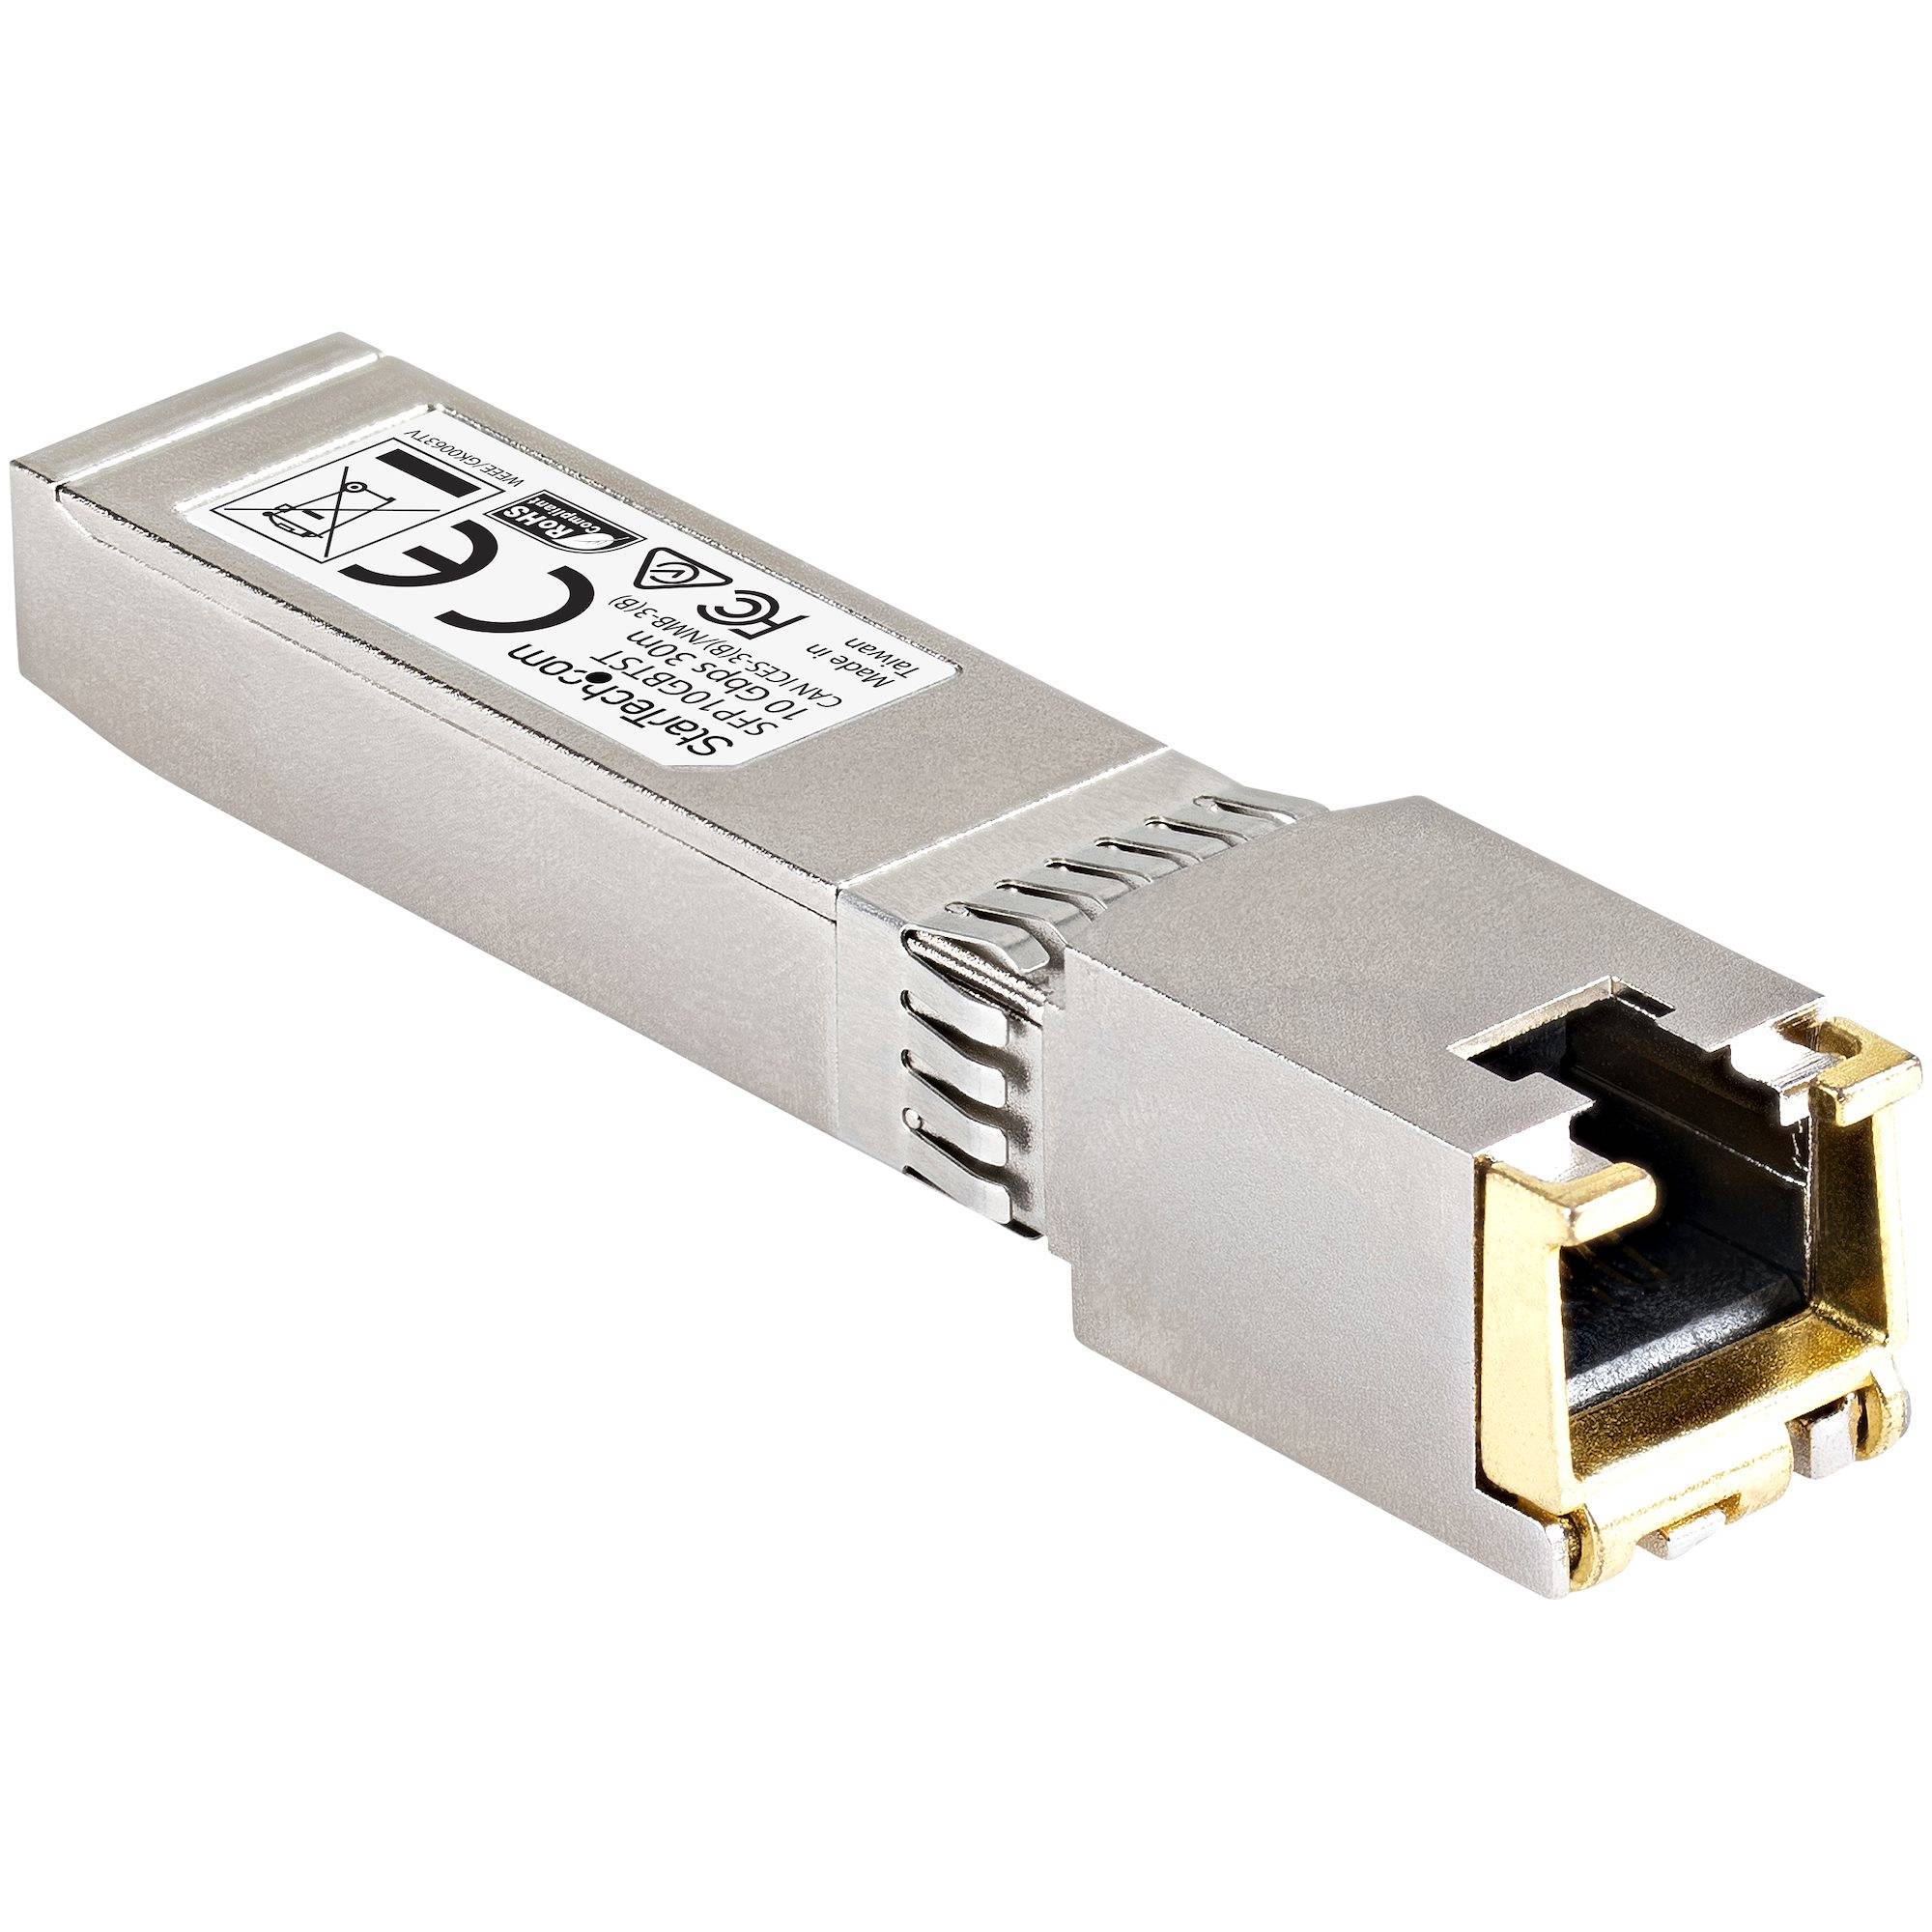 Rca Informatique - image du produit : CISCO COMPATIBLE 10GBASE-T SFP+ RJ45 SFP+ MODULE - 10GB MINI G   IN